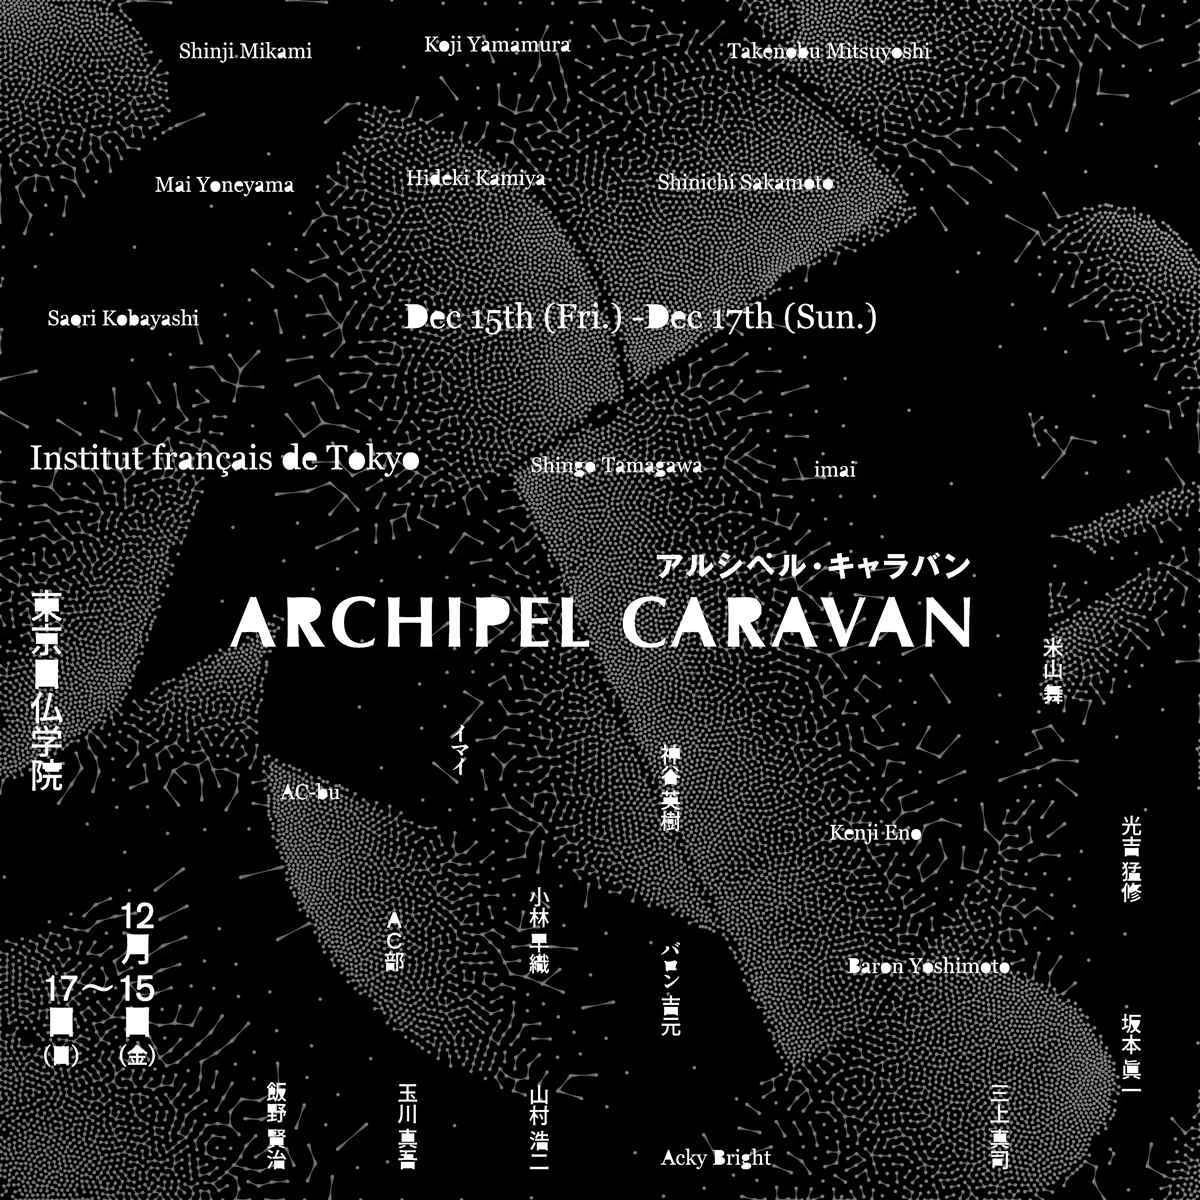 米山舞、AC部、imaiら登壇　ポップカルチャー特化イベント「Archipel Caravan」開催